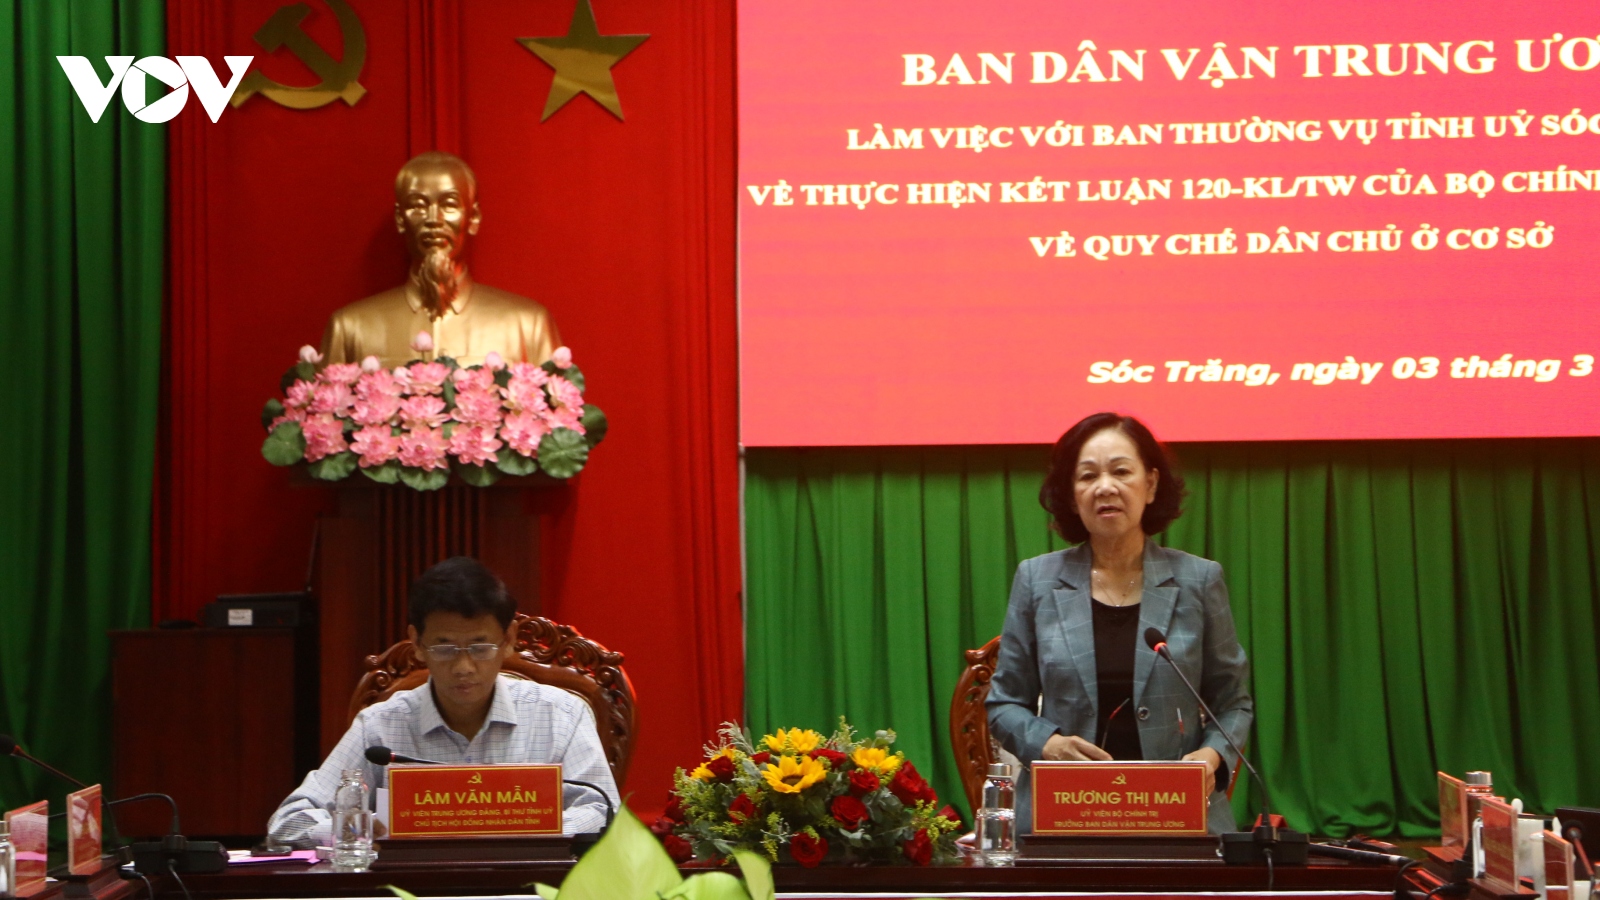 Trưởng Ban Dân vận TƯ Trương Thị Mai: Thực hiện quy chế dân chủ ở cơ sở phải có giám sát